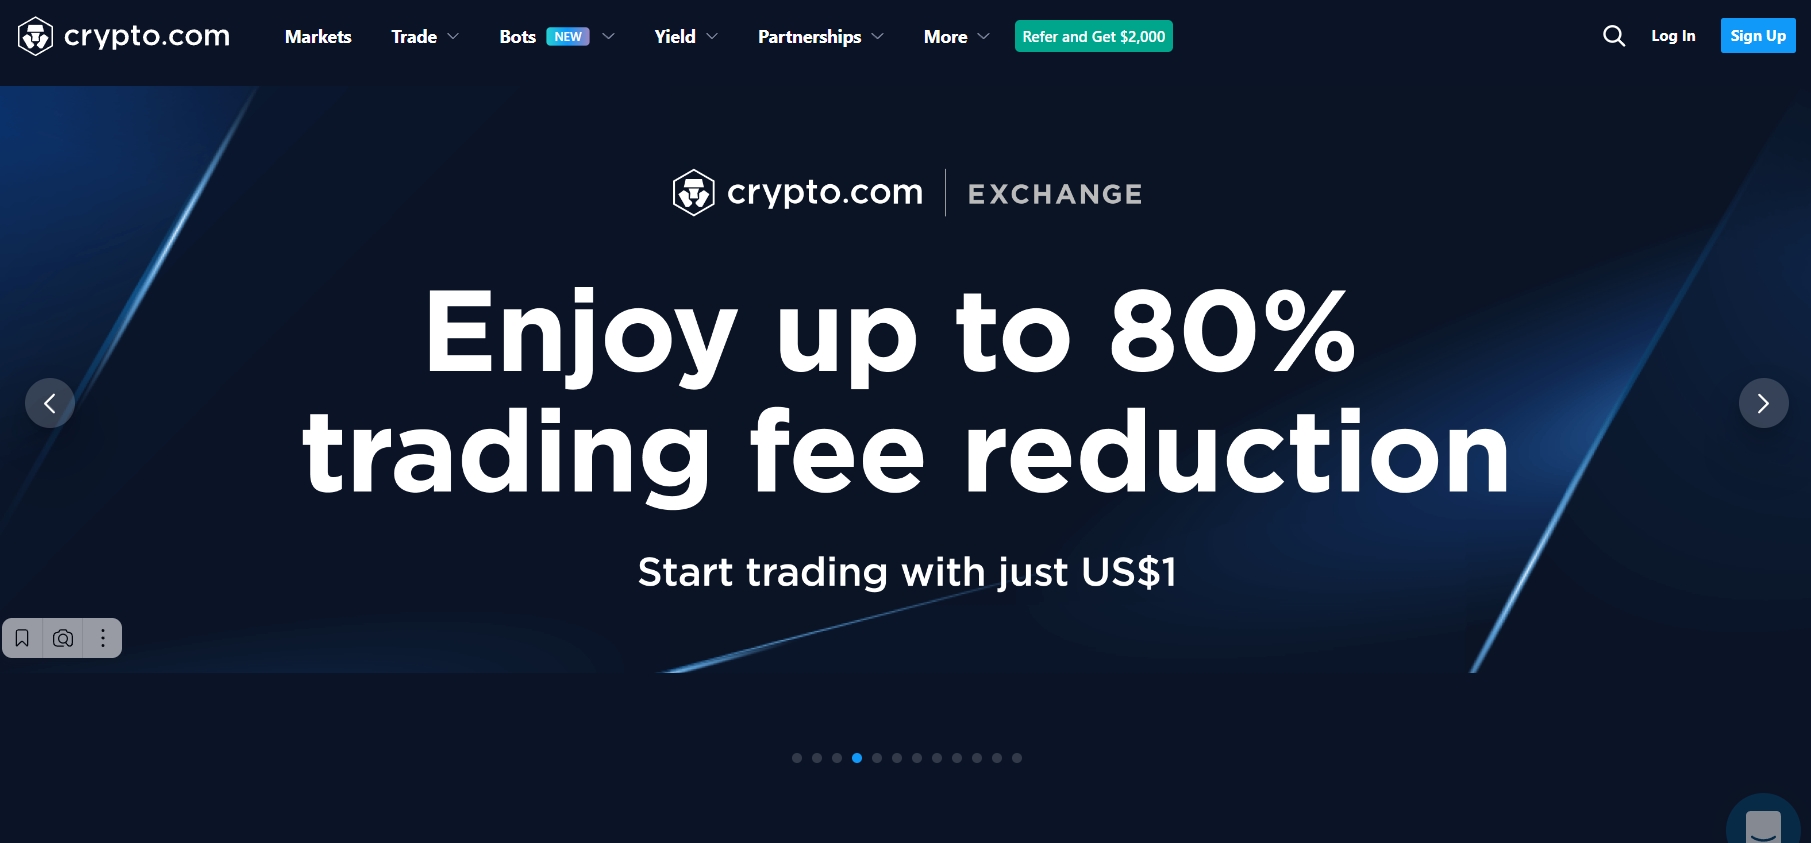 Crypto.com Exchange startseite